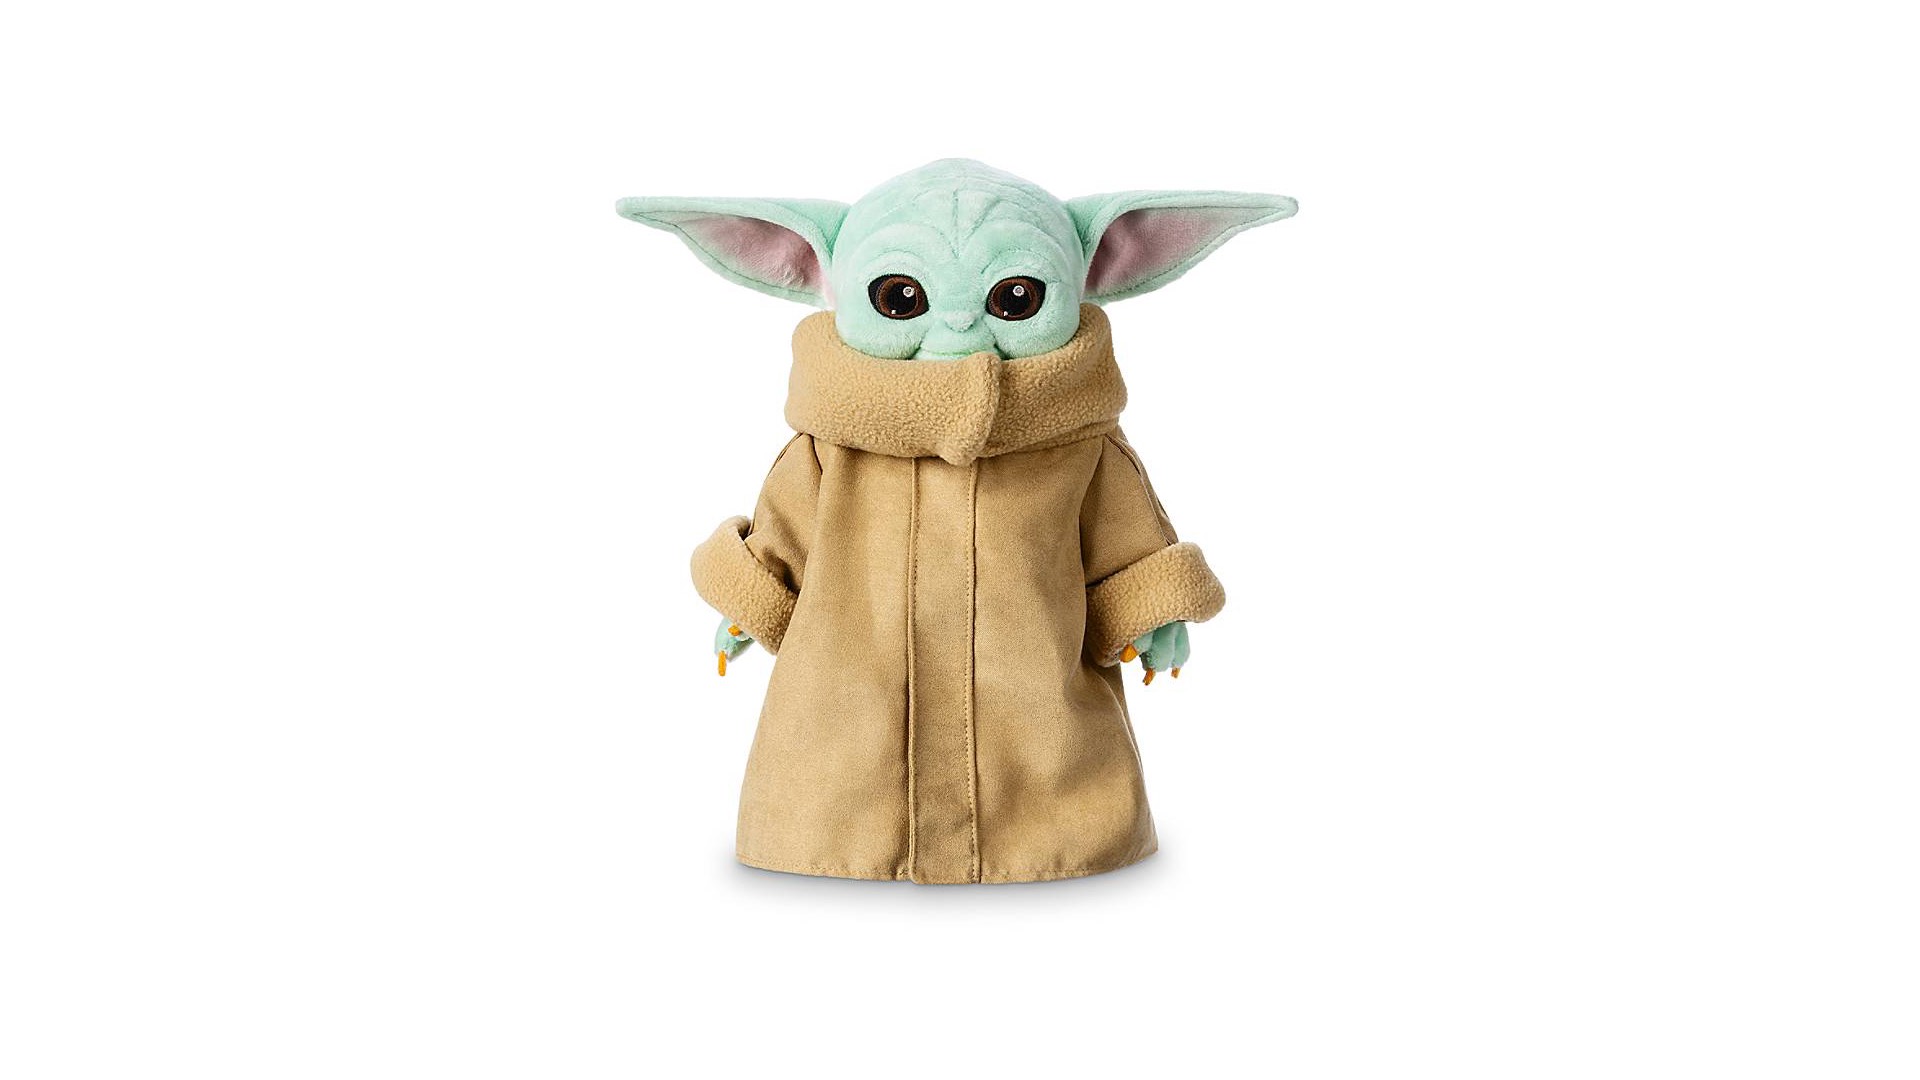 Cette peluche Baby Yoda vendue par Disney a été conçue pour vous